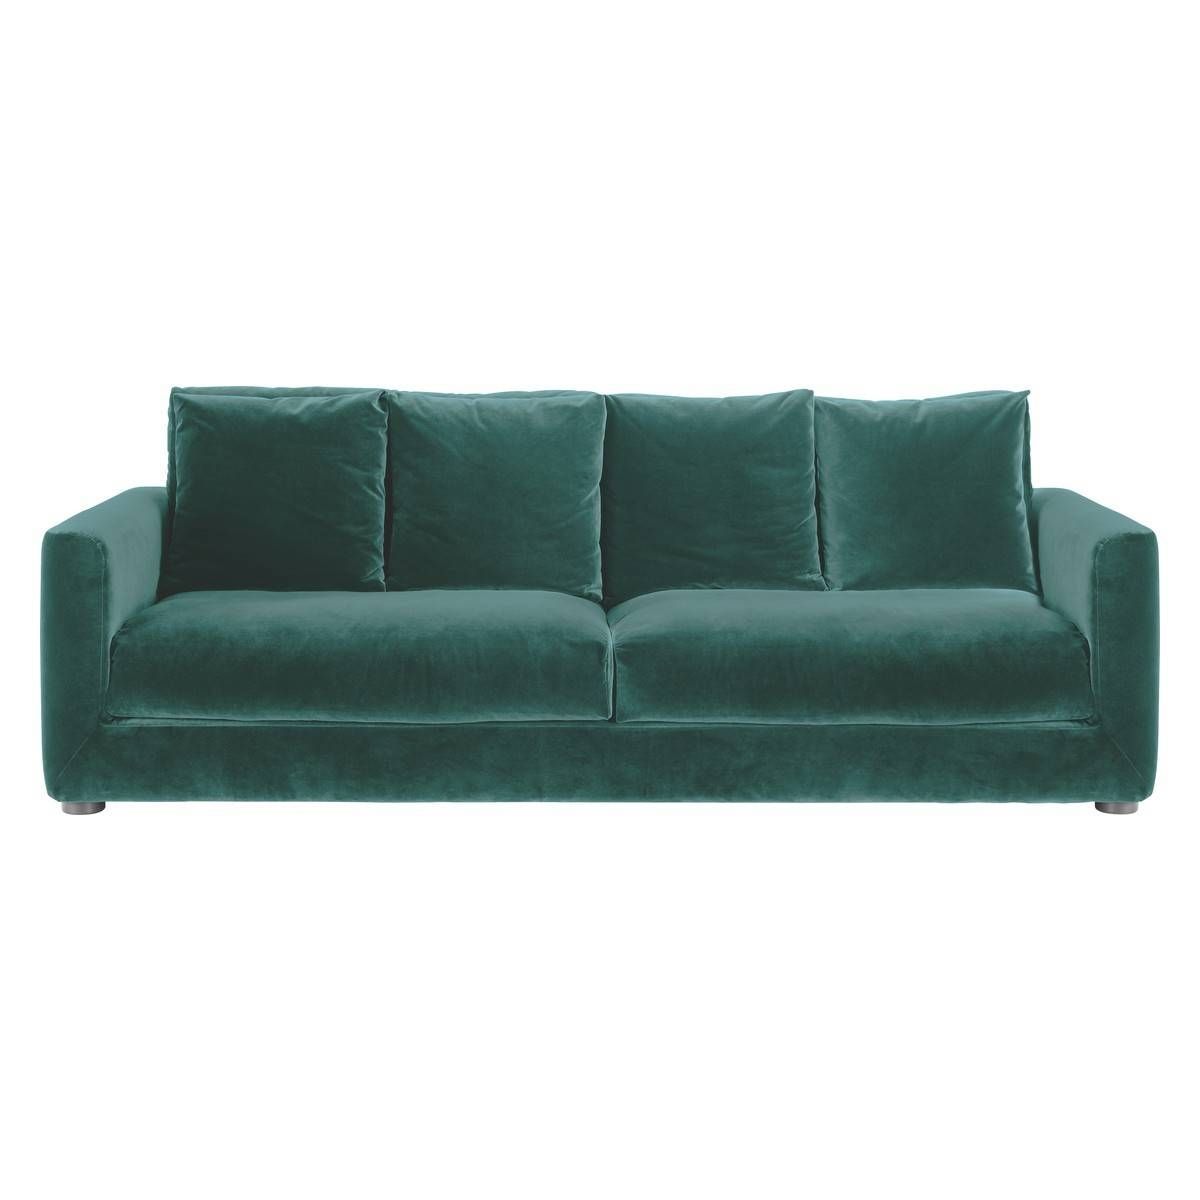 Rupert Emerald Green Velvet 3 Seater Sofa Bed | Buy Now At Habitat Uk Inside Emerald Green Sofas (Photo 12 of 15)